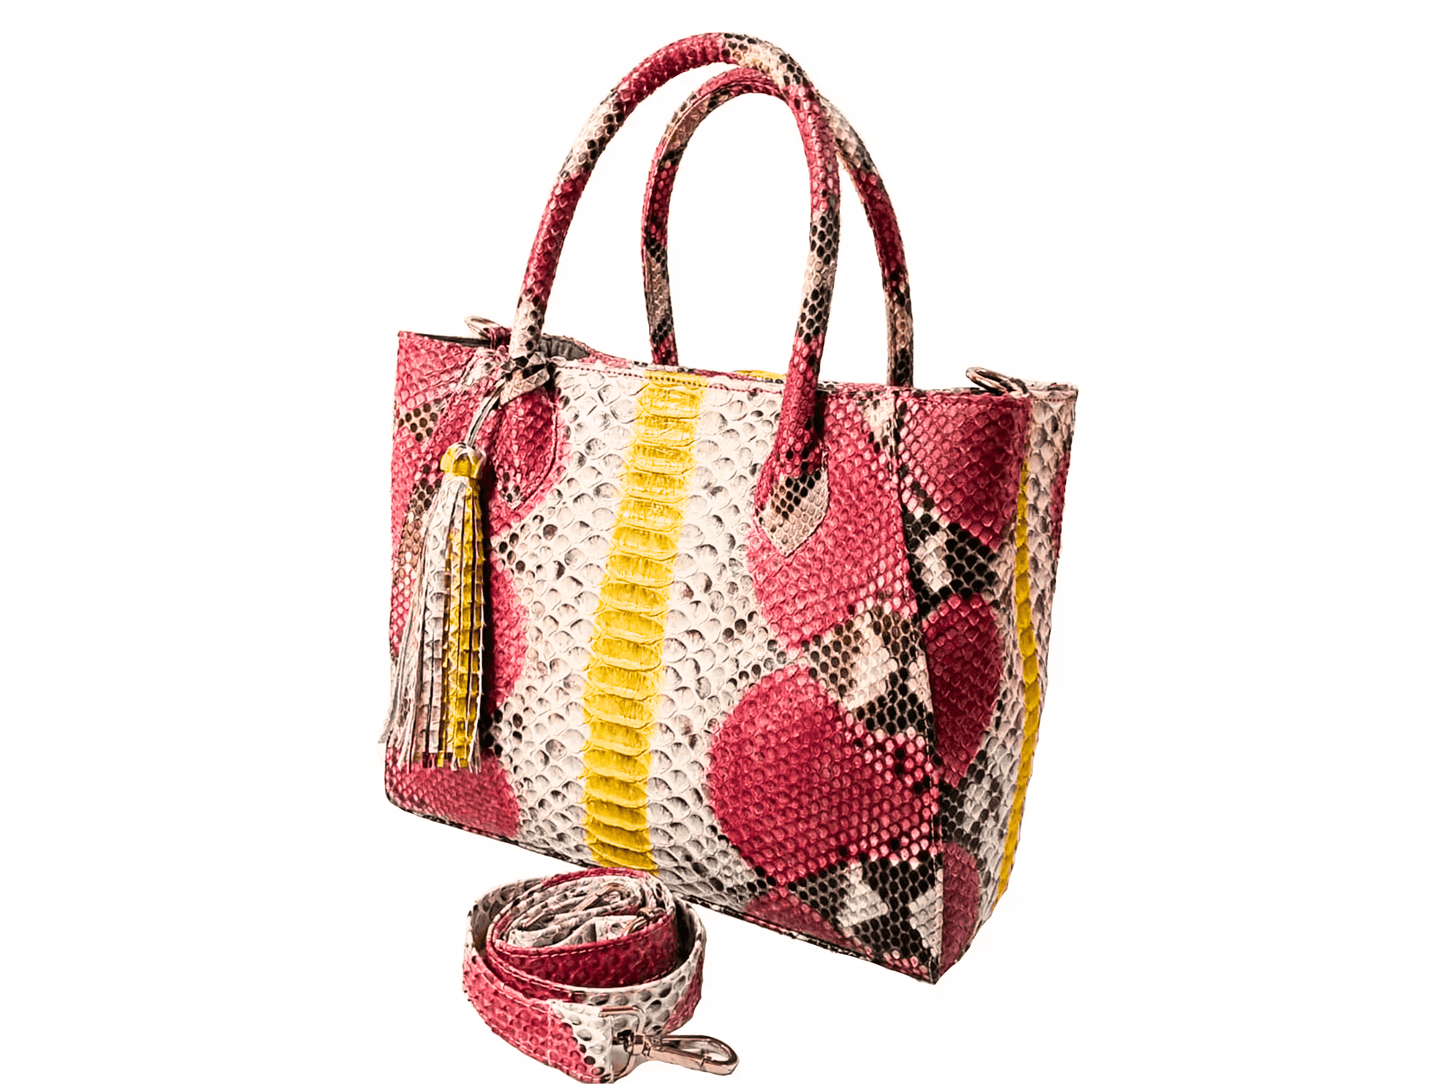 Tote Snakeskin Shoulder Bag Rose Pink Python Jacket by LFM Fashion